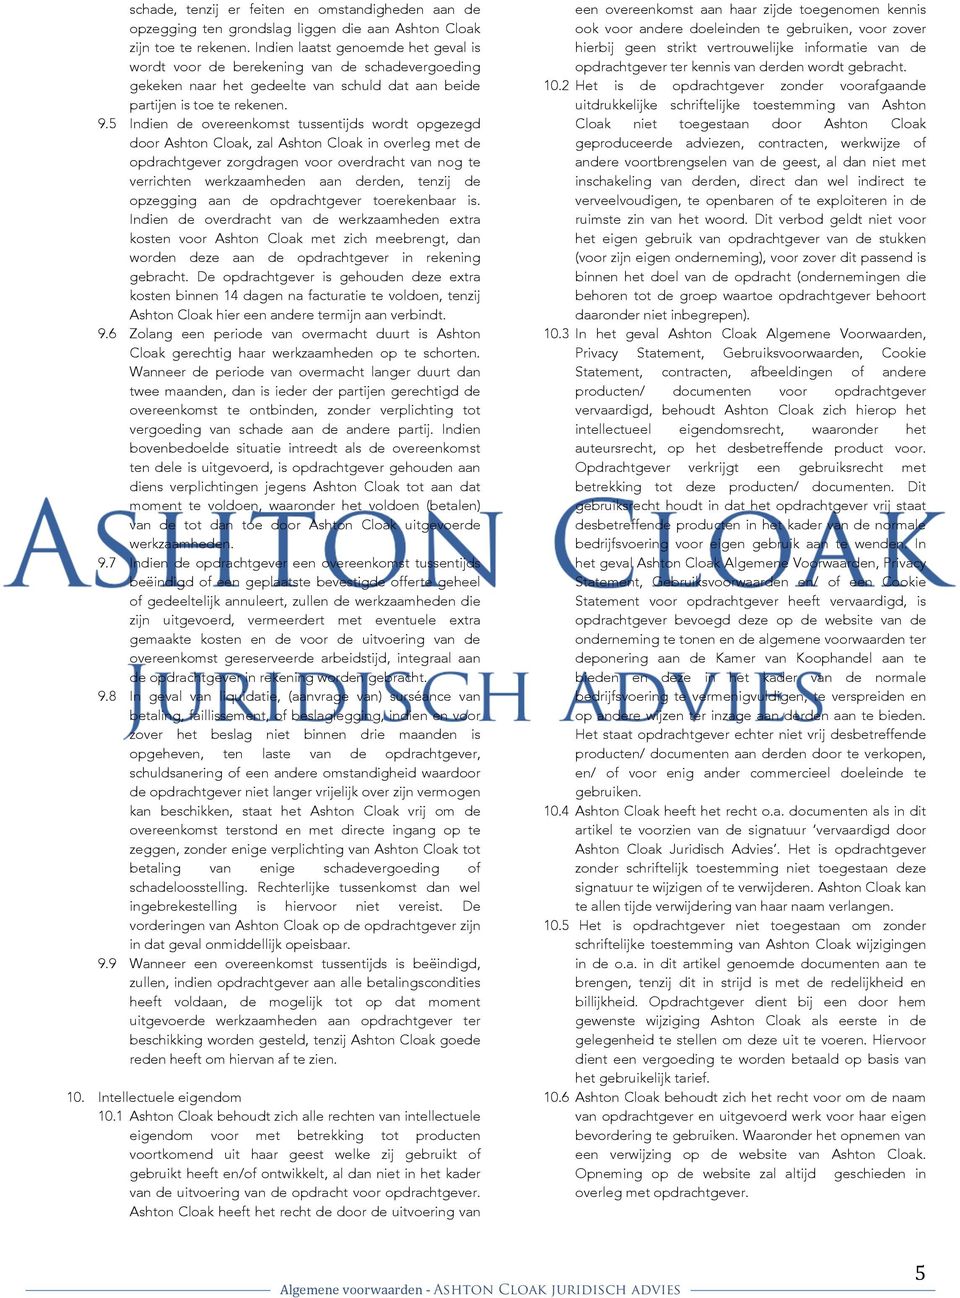 5 Indien de overeenkomst tussentijds wordt opgezegd door Ashton Cloak, zal Ashton Cloak in overleg met de opdrachtgever zorgdragen voor overdracht van nog te verrichten werkzaamheden aan derden,